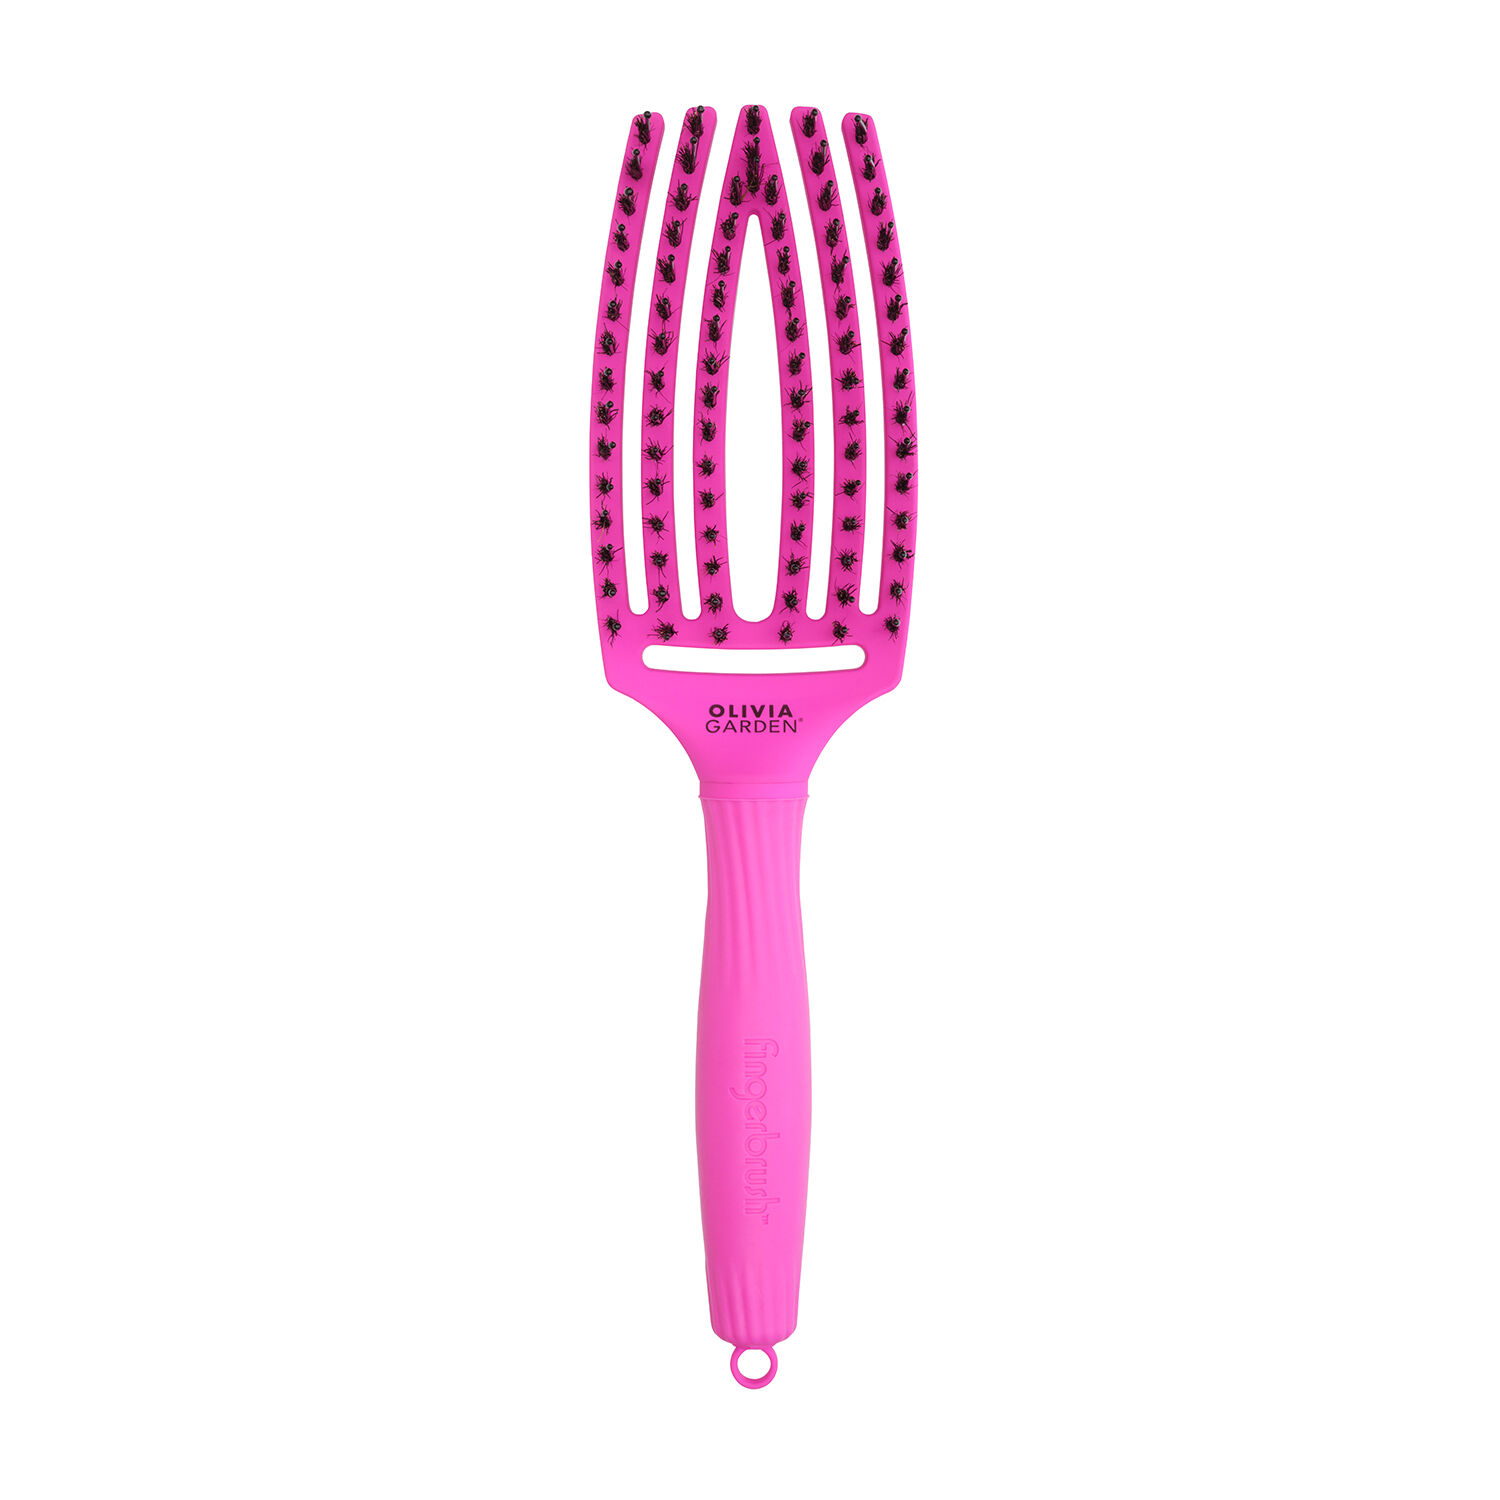 Неоново-фиолетовая расческа Olivia Garden Fingerbrush, 1 шт. фото